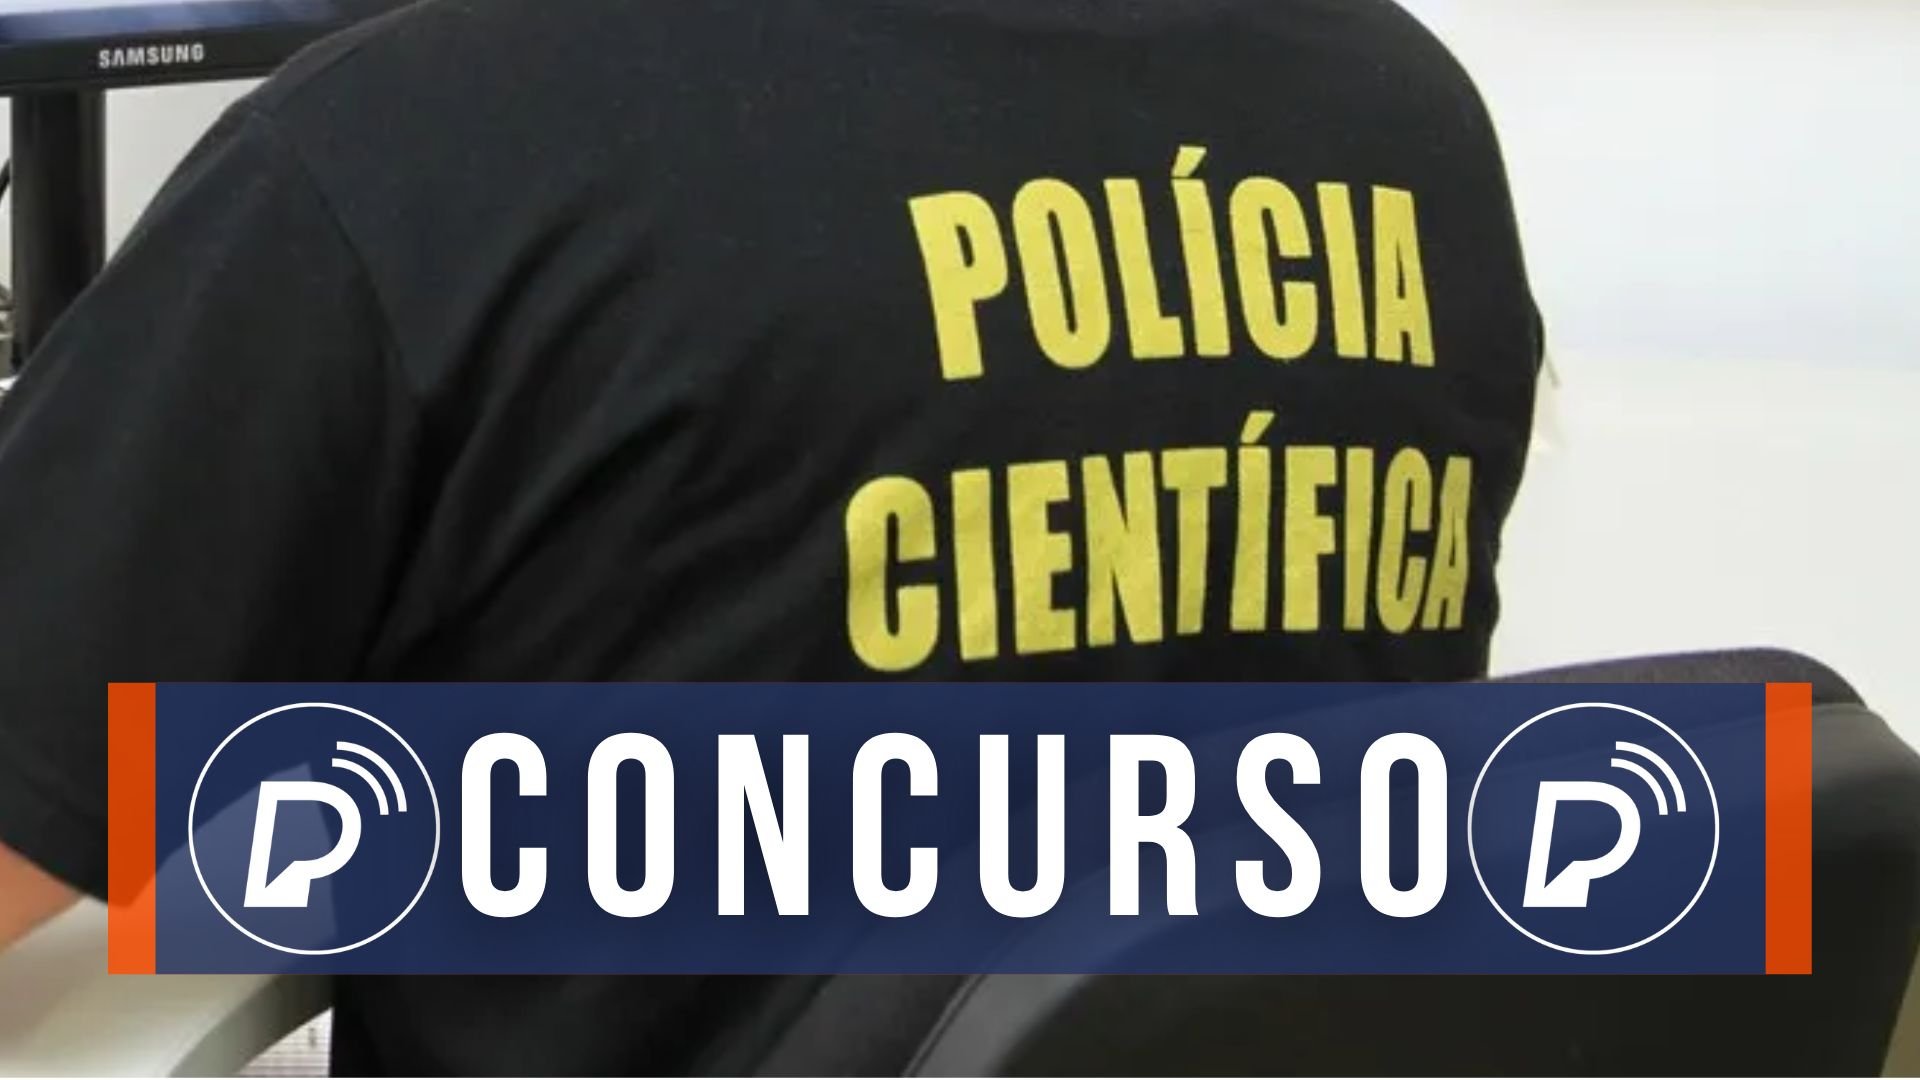 Concurso da Polícia CIentífica de Pernambuco. Foto: Divulgação